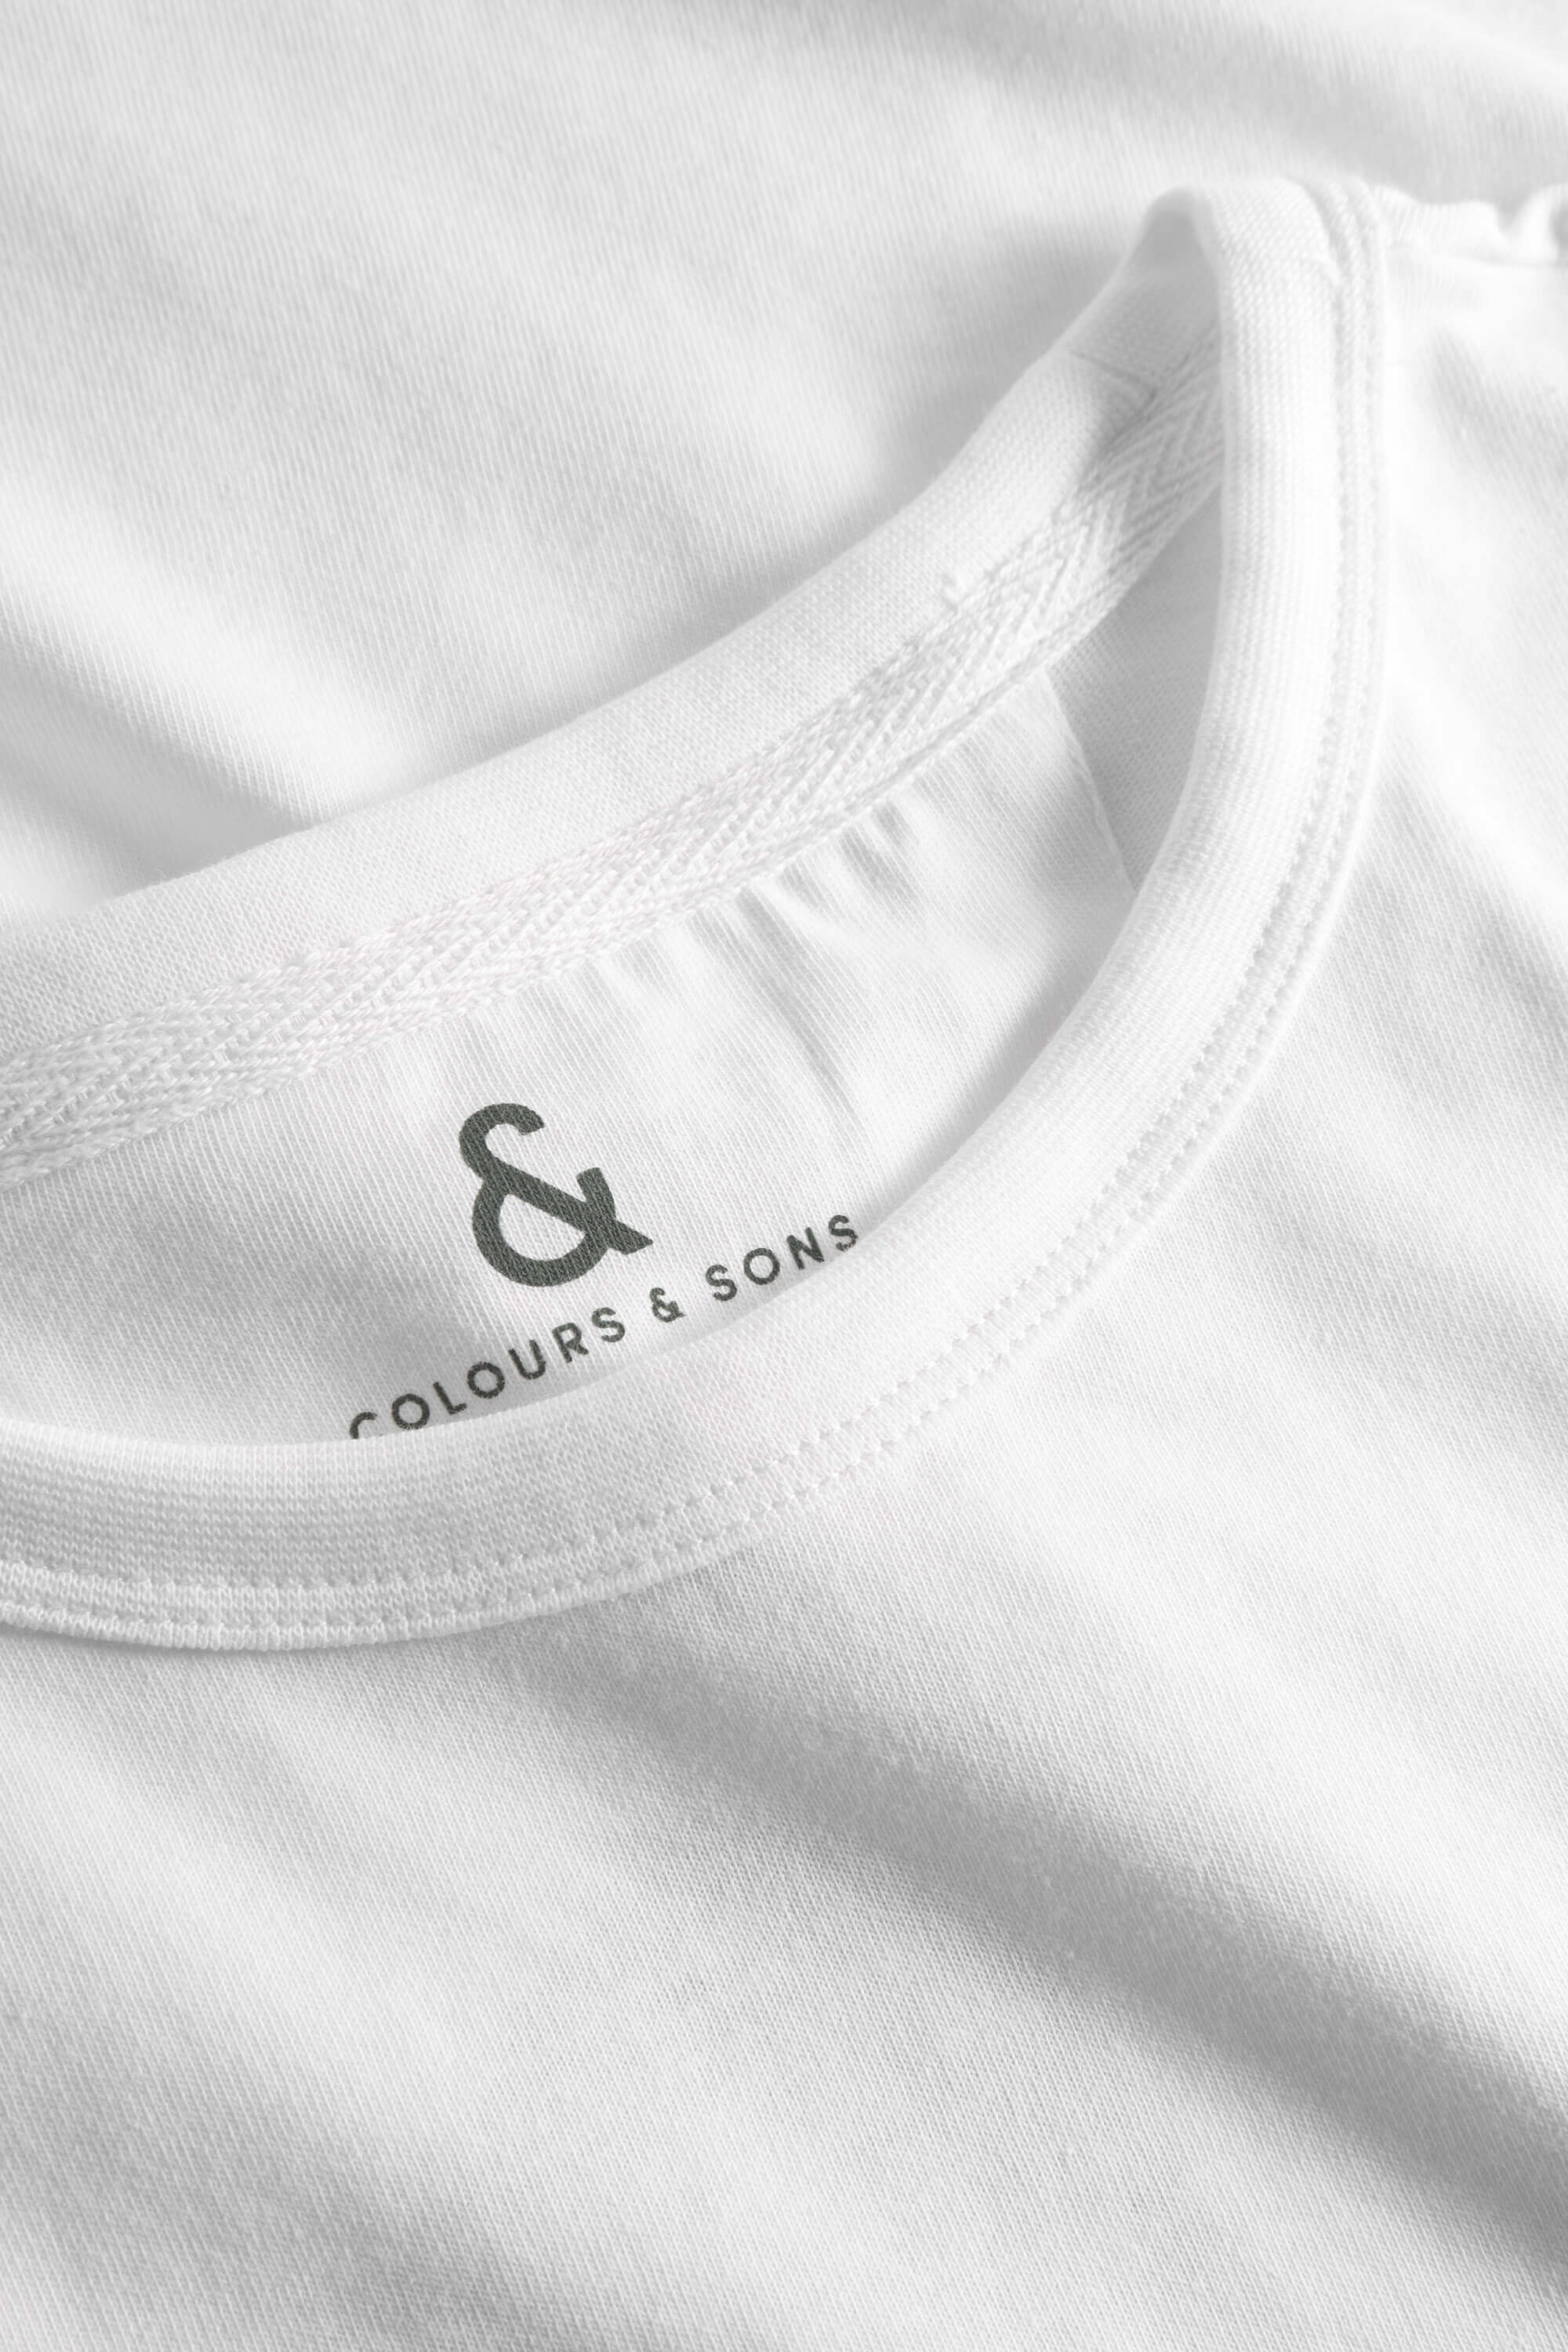 Herren T-Shirt, 100% Baumwolle von Colours & Sons